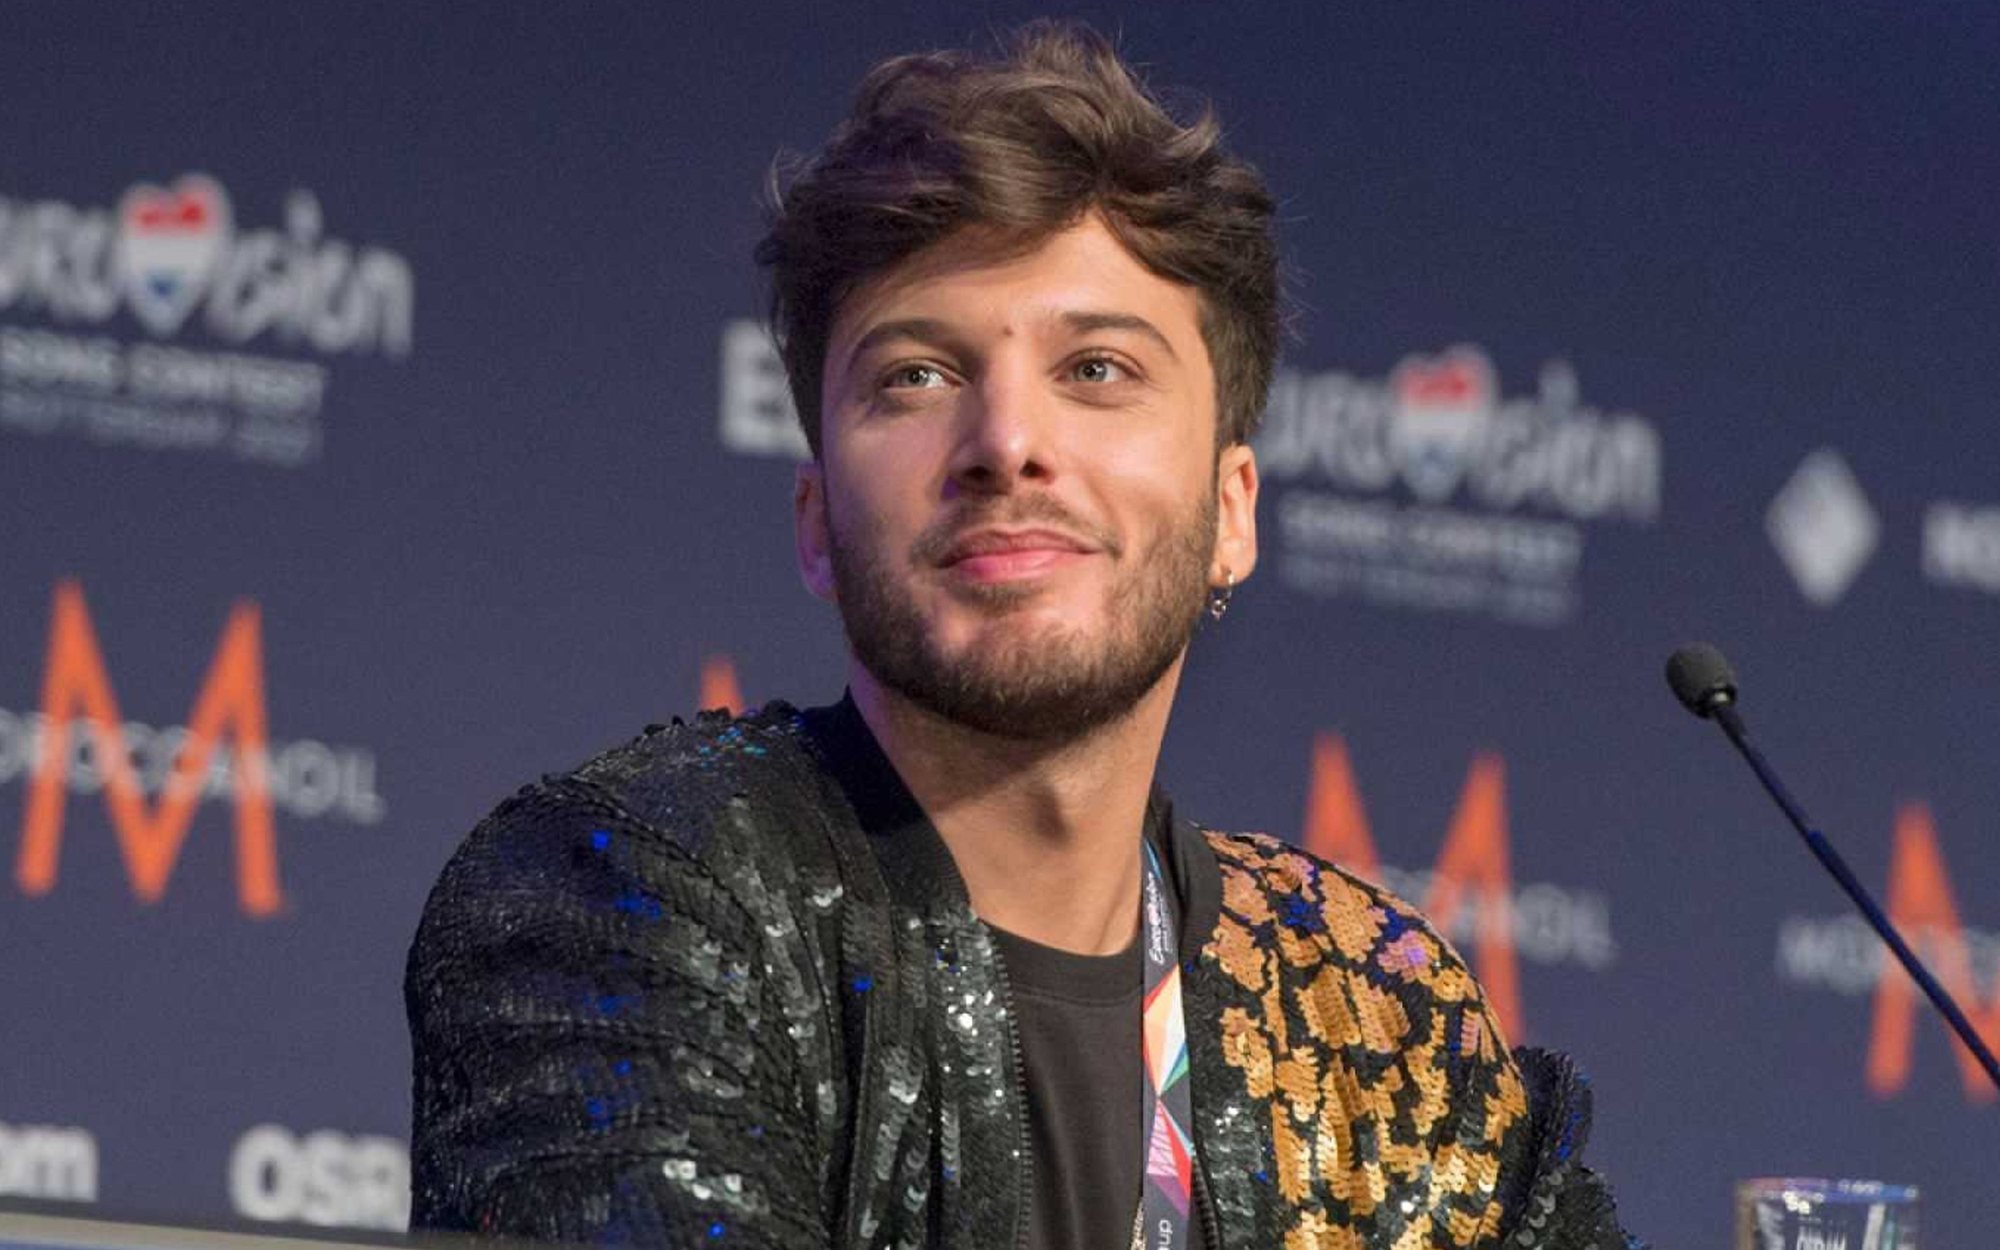 España ganó el Festival de Eurovisión 2021 con Blas Cantó, pero durante el Jury Rehearsal